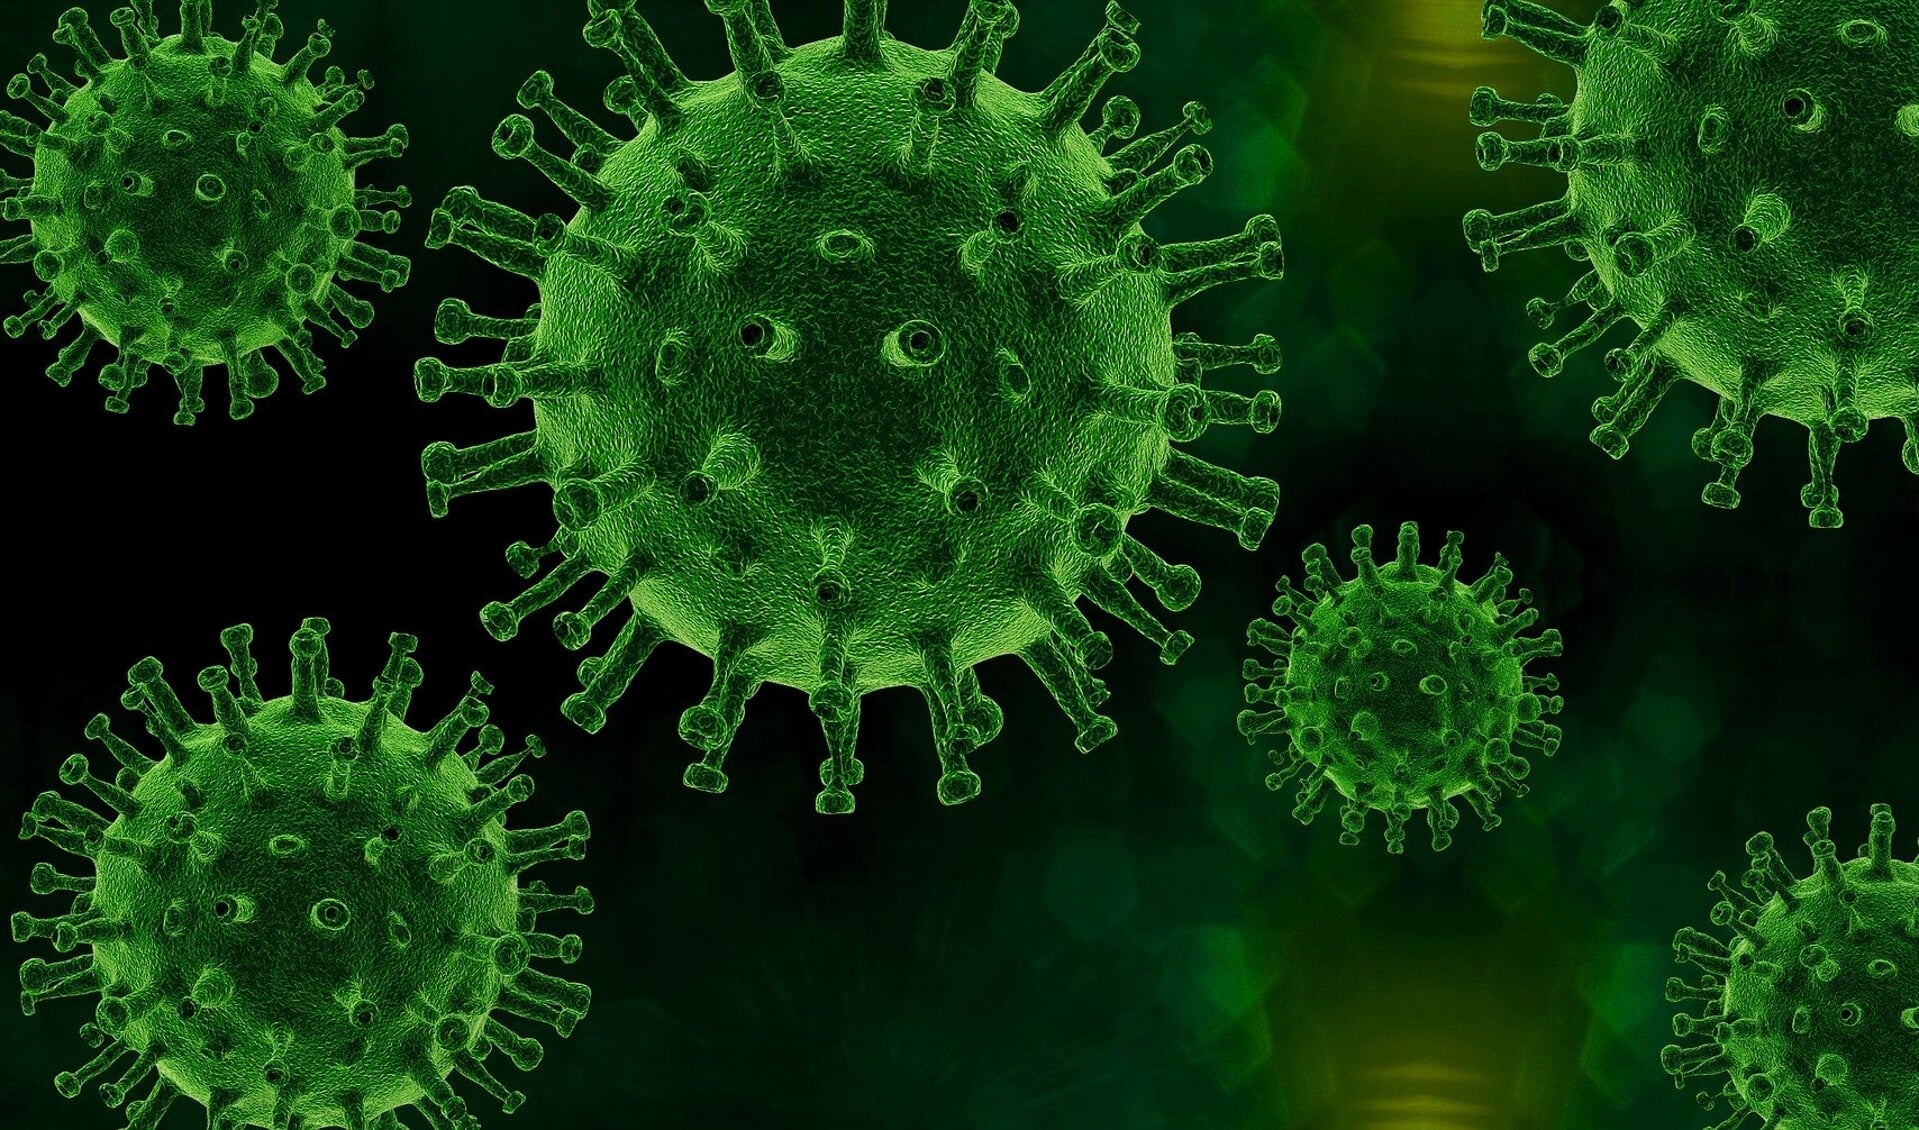 De afgelopen week was het hoogste aantal besmettingen in een week van dit jaar. 